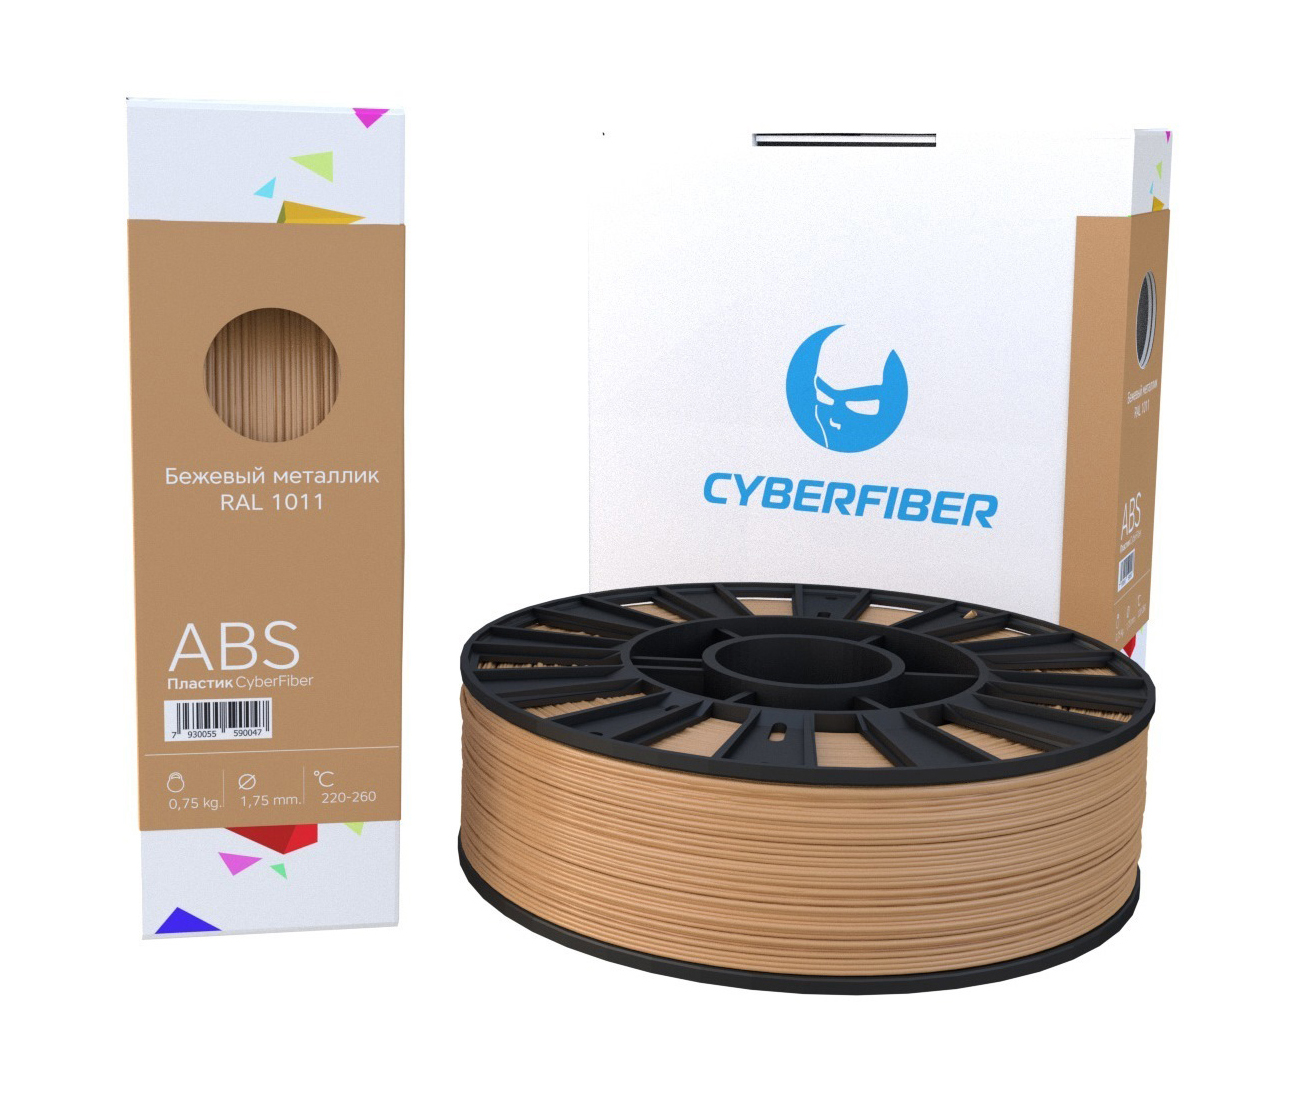 Фото ABS пластик CyberFiber 1,75, бежевый металлик, 750 г